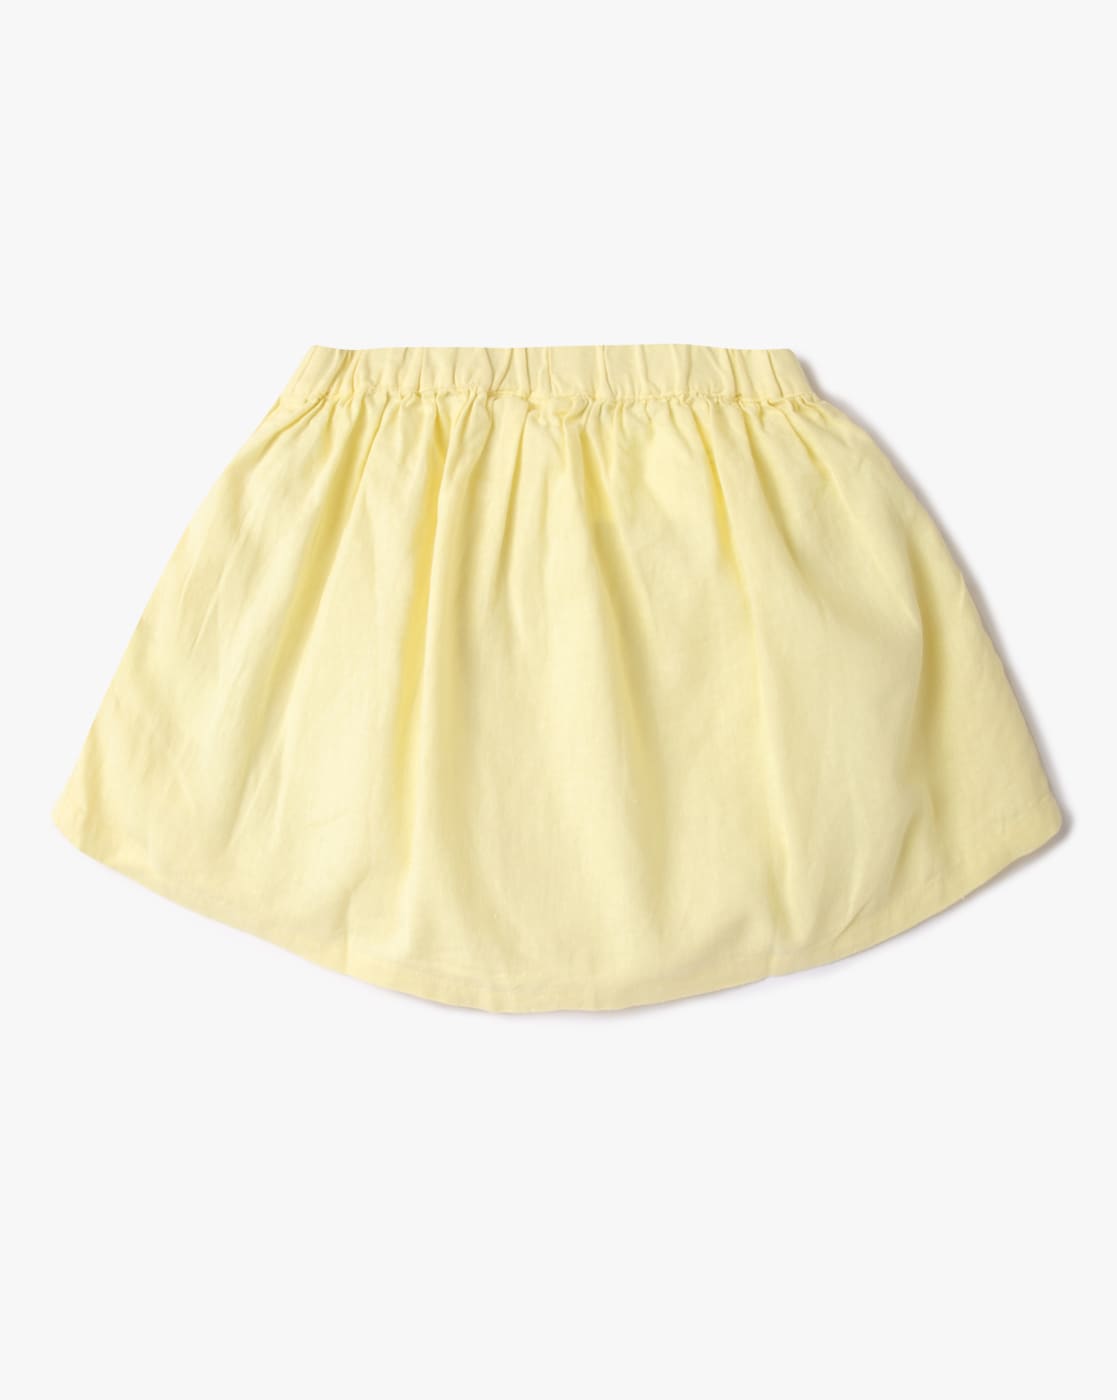 Share 142+ yellow skirt